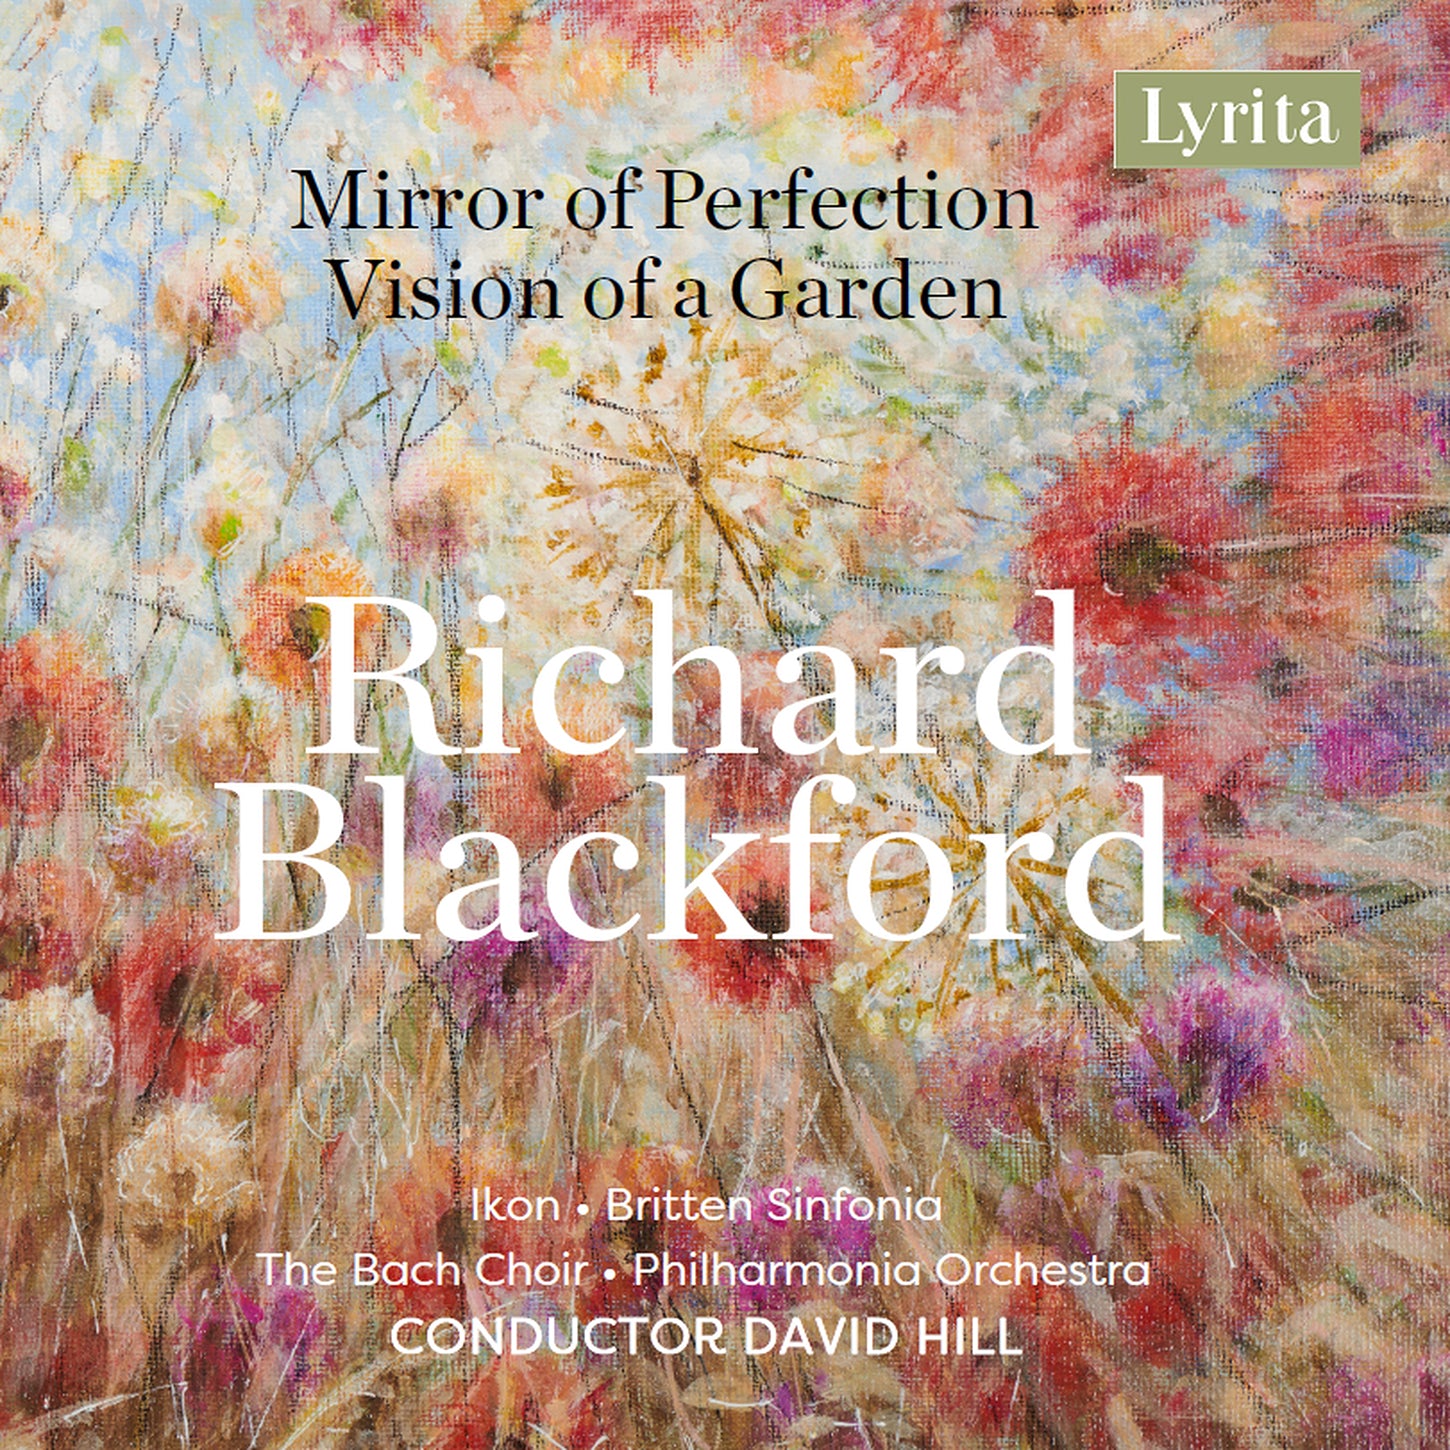 Blackford: Mirror of Perfection / Ikon, Britten Sinfonia, Bach Choir, Philharmonia Orchestra